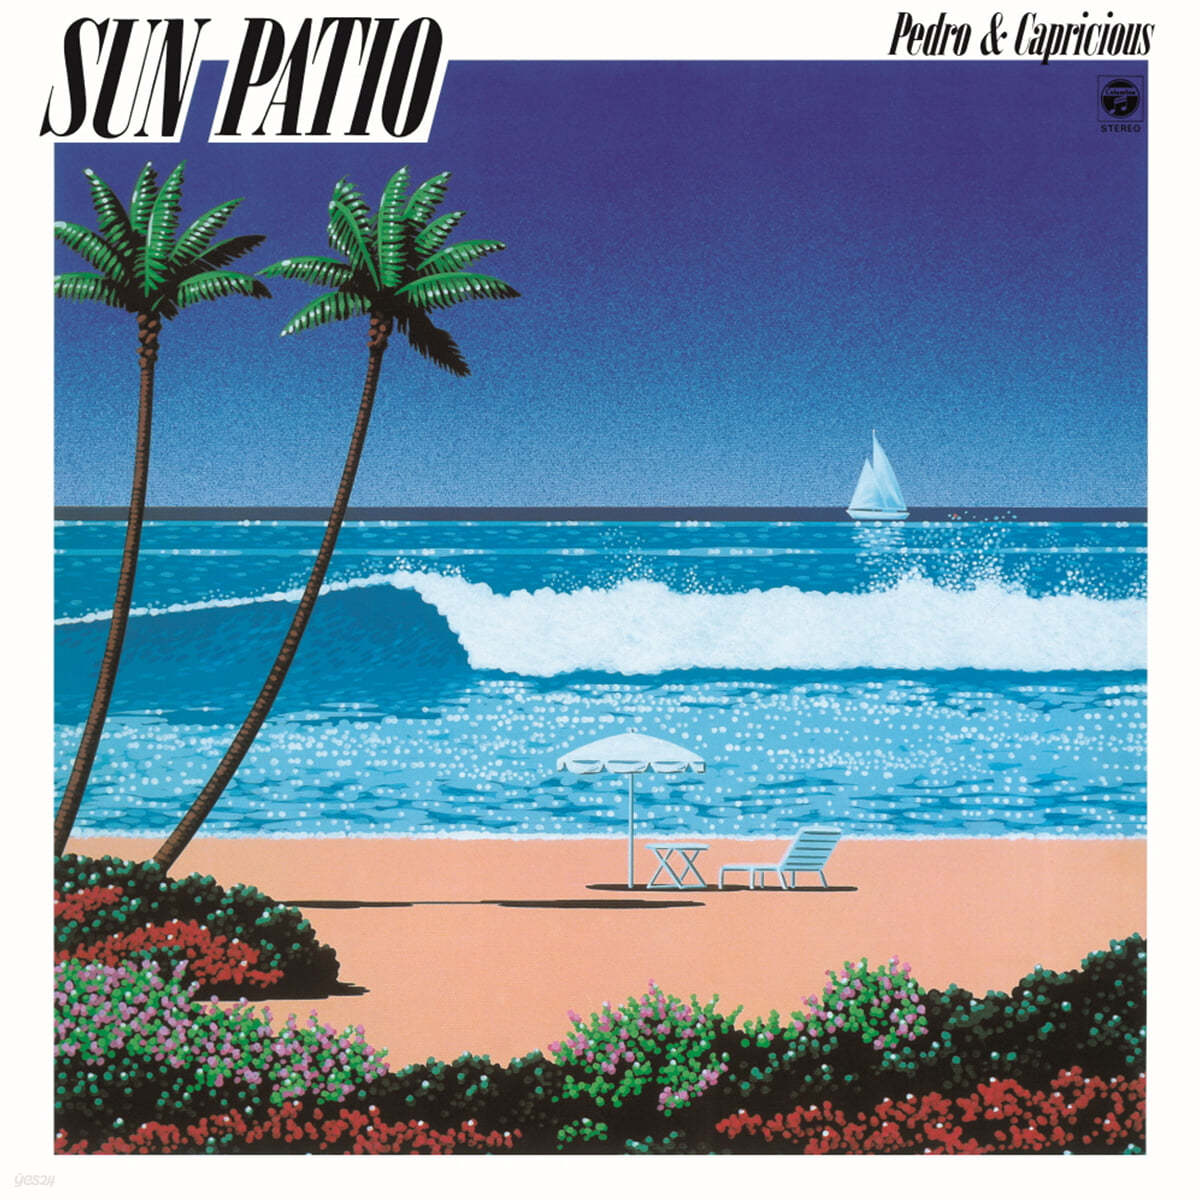 Pedro & Capricious (페드로 & 카프리셔스) - Sun Patio [LP]